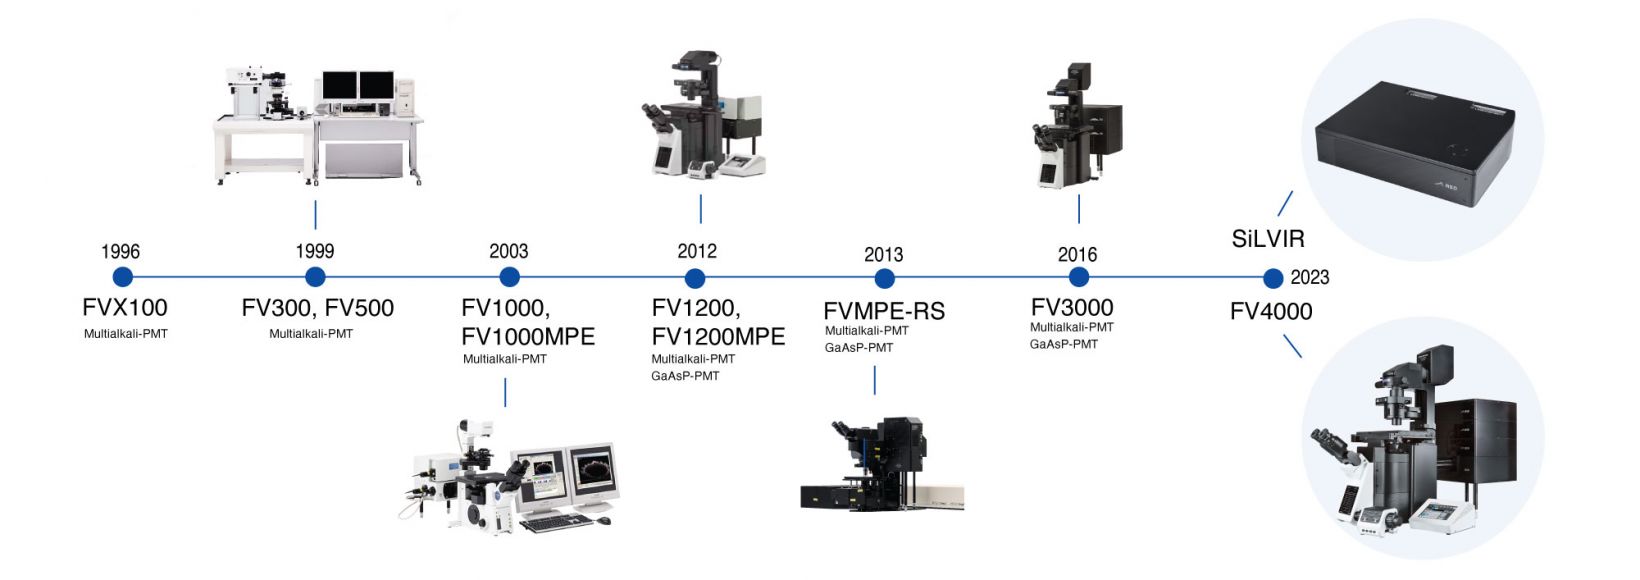 Evolución temporal de los desarrollos en microscopía confocal, primero con Olympus y después con Evident hasta el más reciente microscopio confocal láser FV4000. 